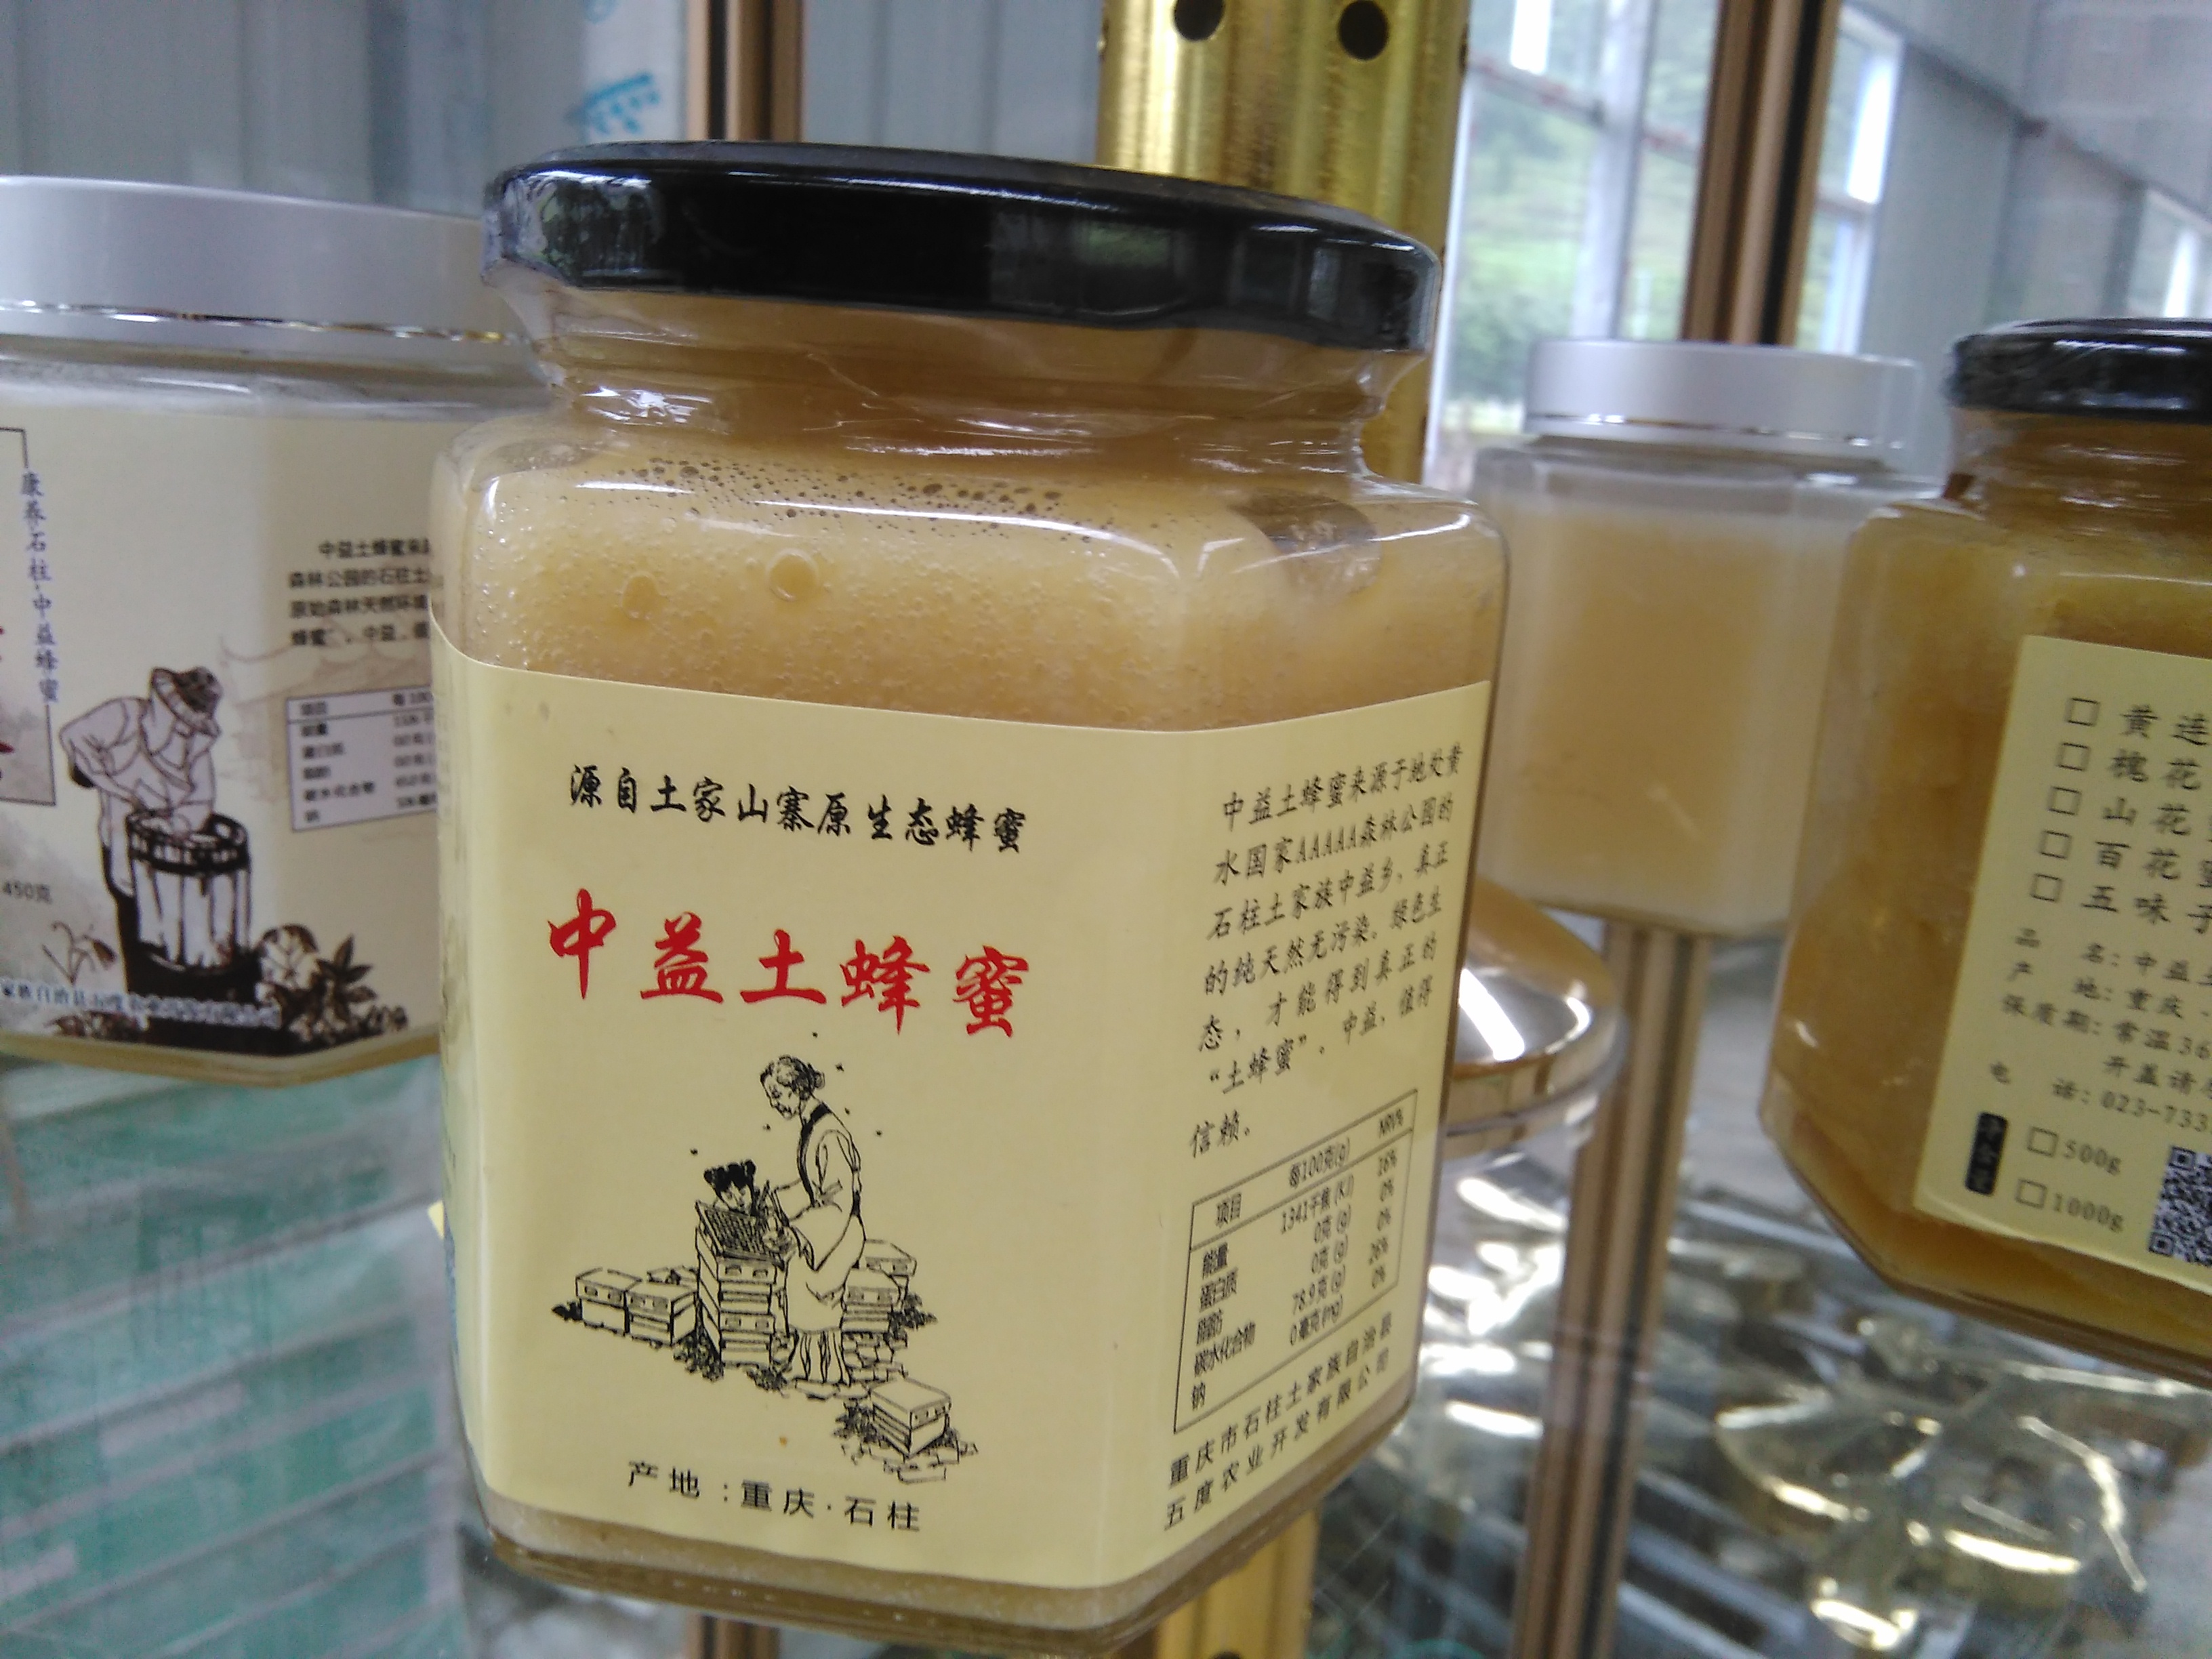 优质土蜂蜜 土蜂蜜产自 重庆 石柱县 中益乡图片